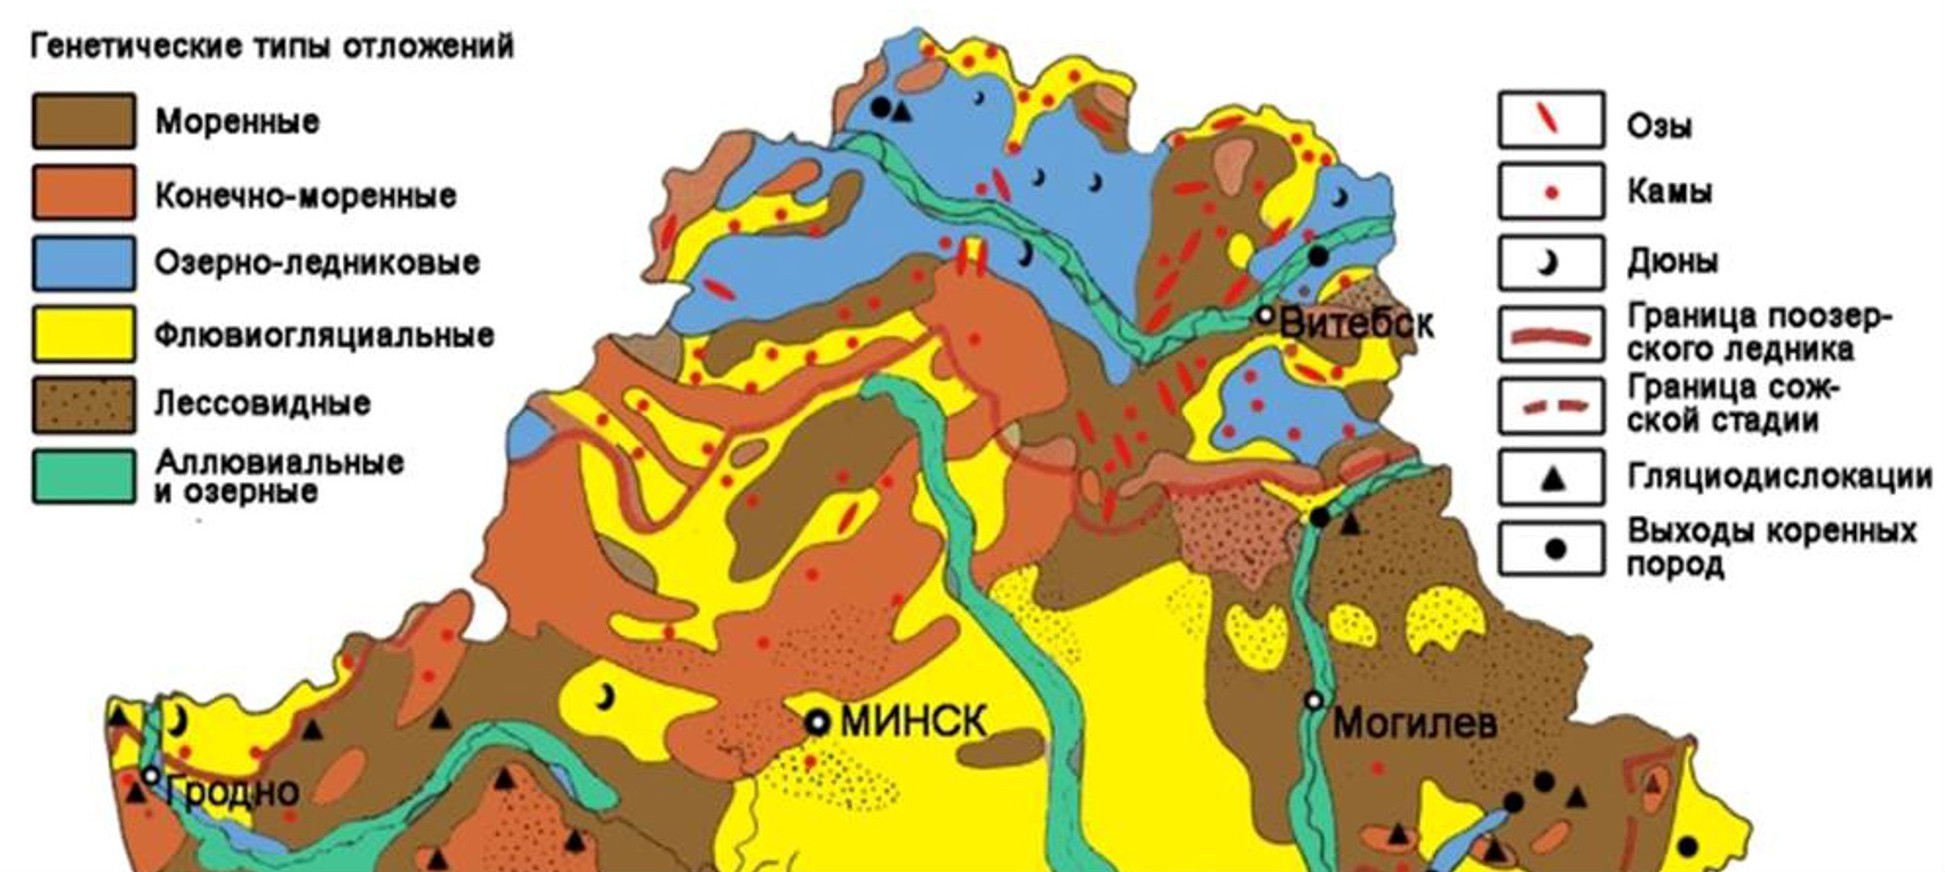 Геологическая карта-схема четвертичных отложений северной Беларуси © Из презентации Александра Санько